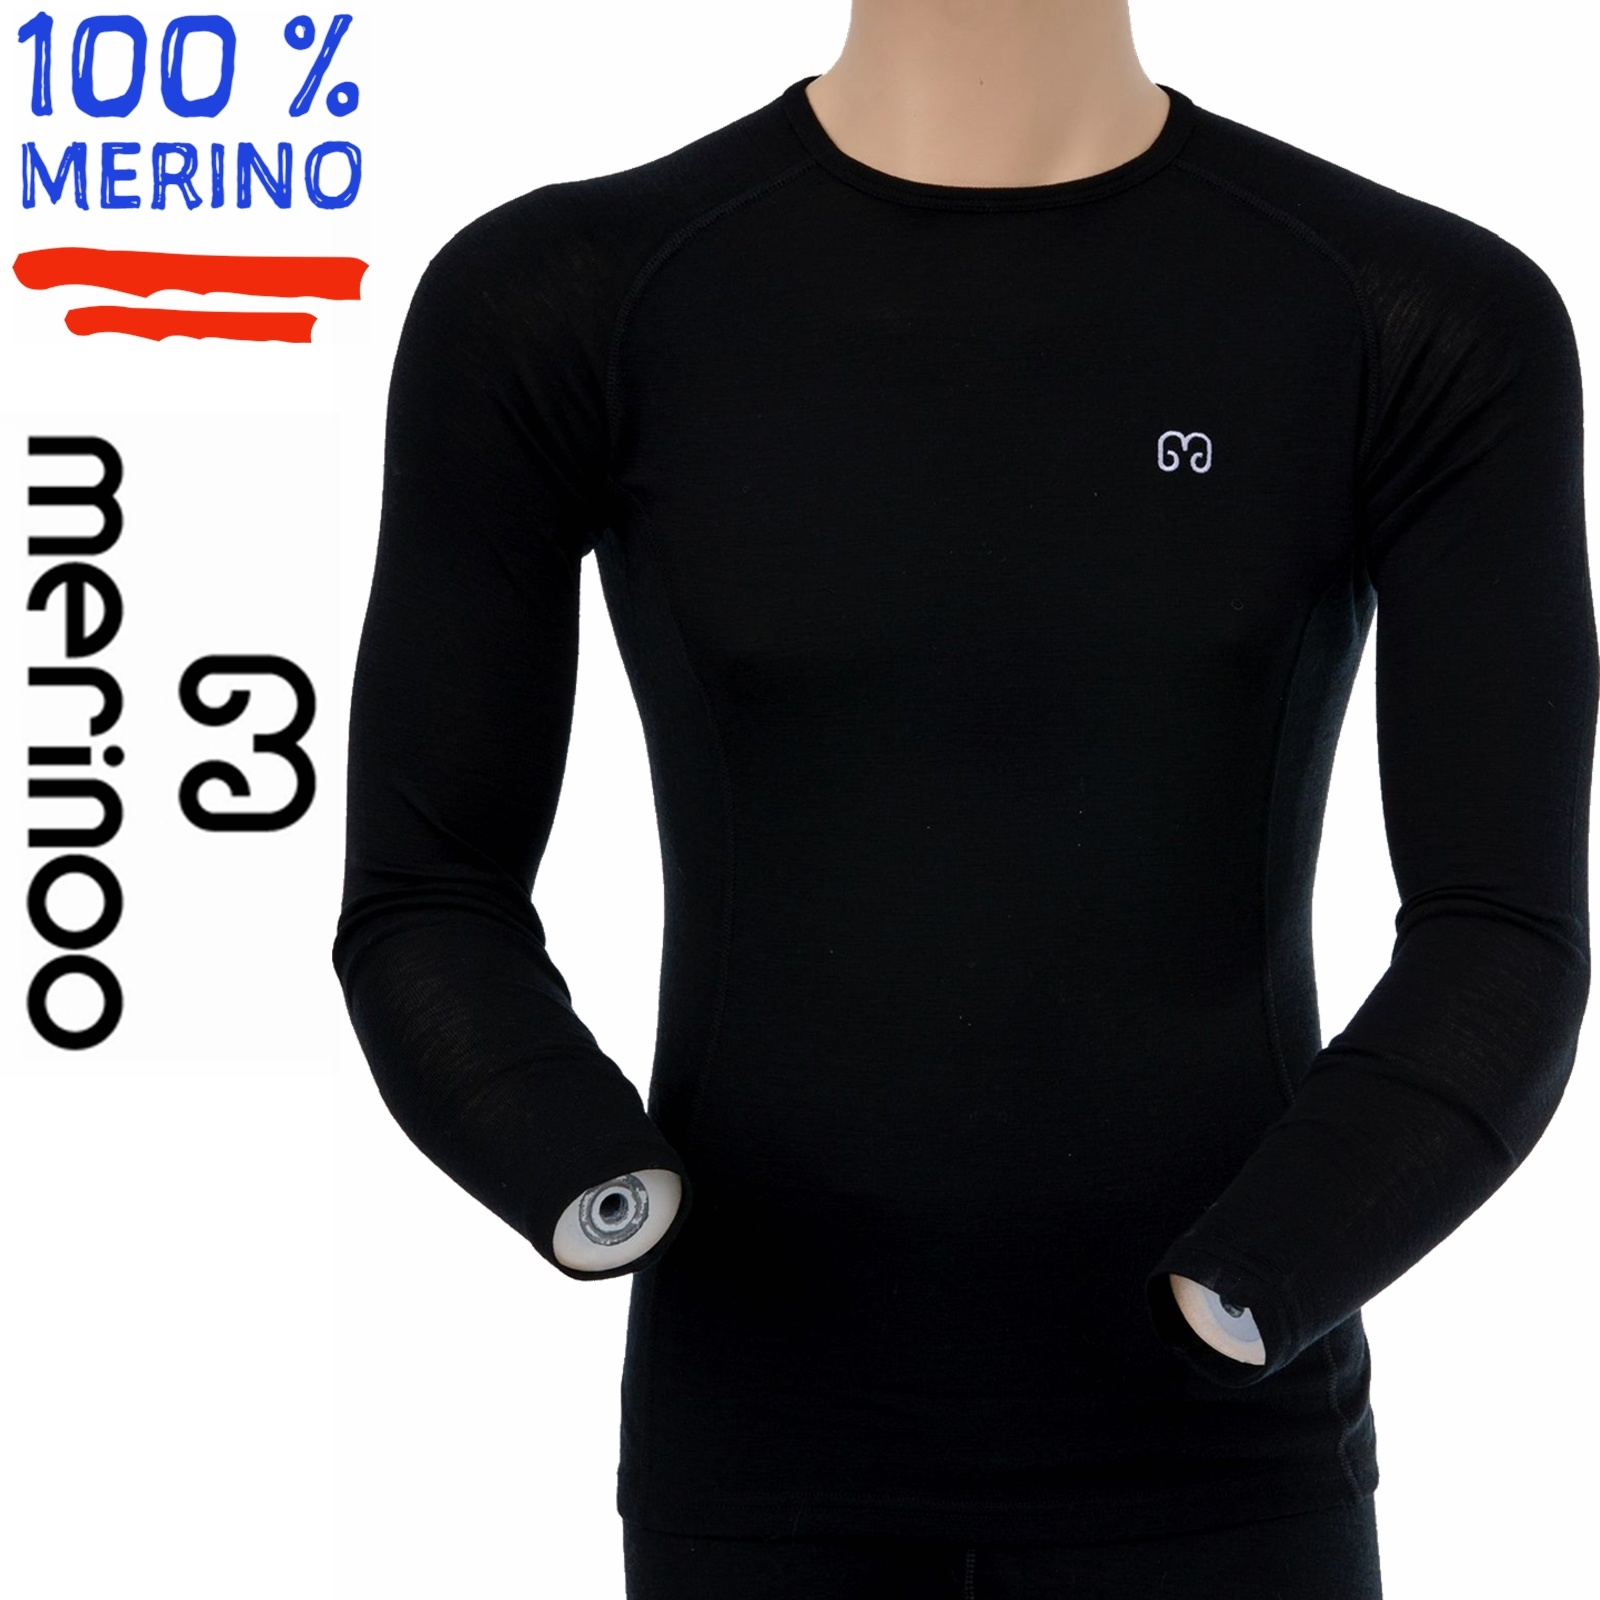 Merinoo - 100% merino thermoshirt voor mannen - MORGEN -